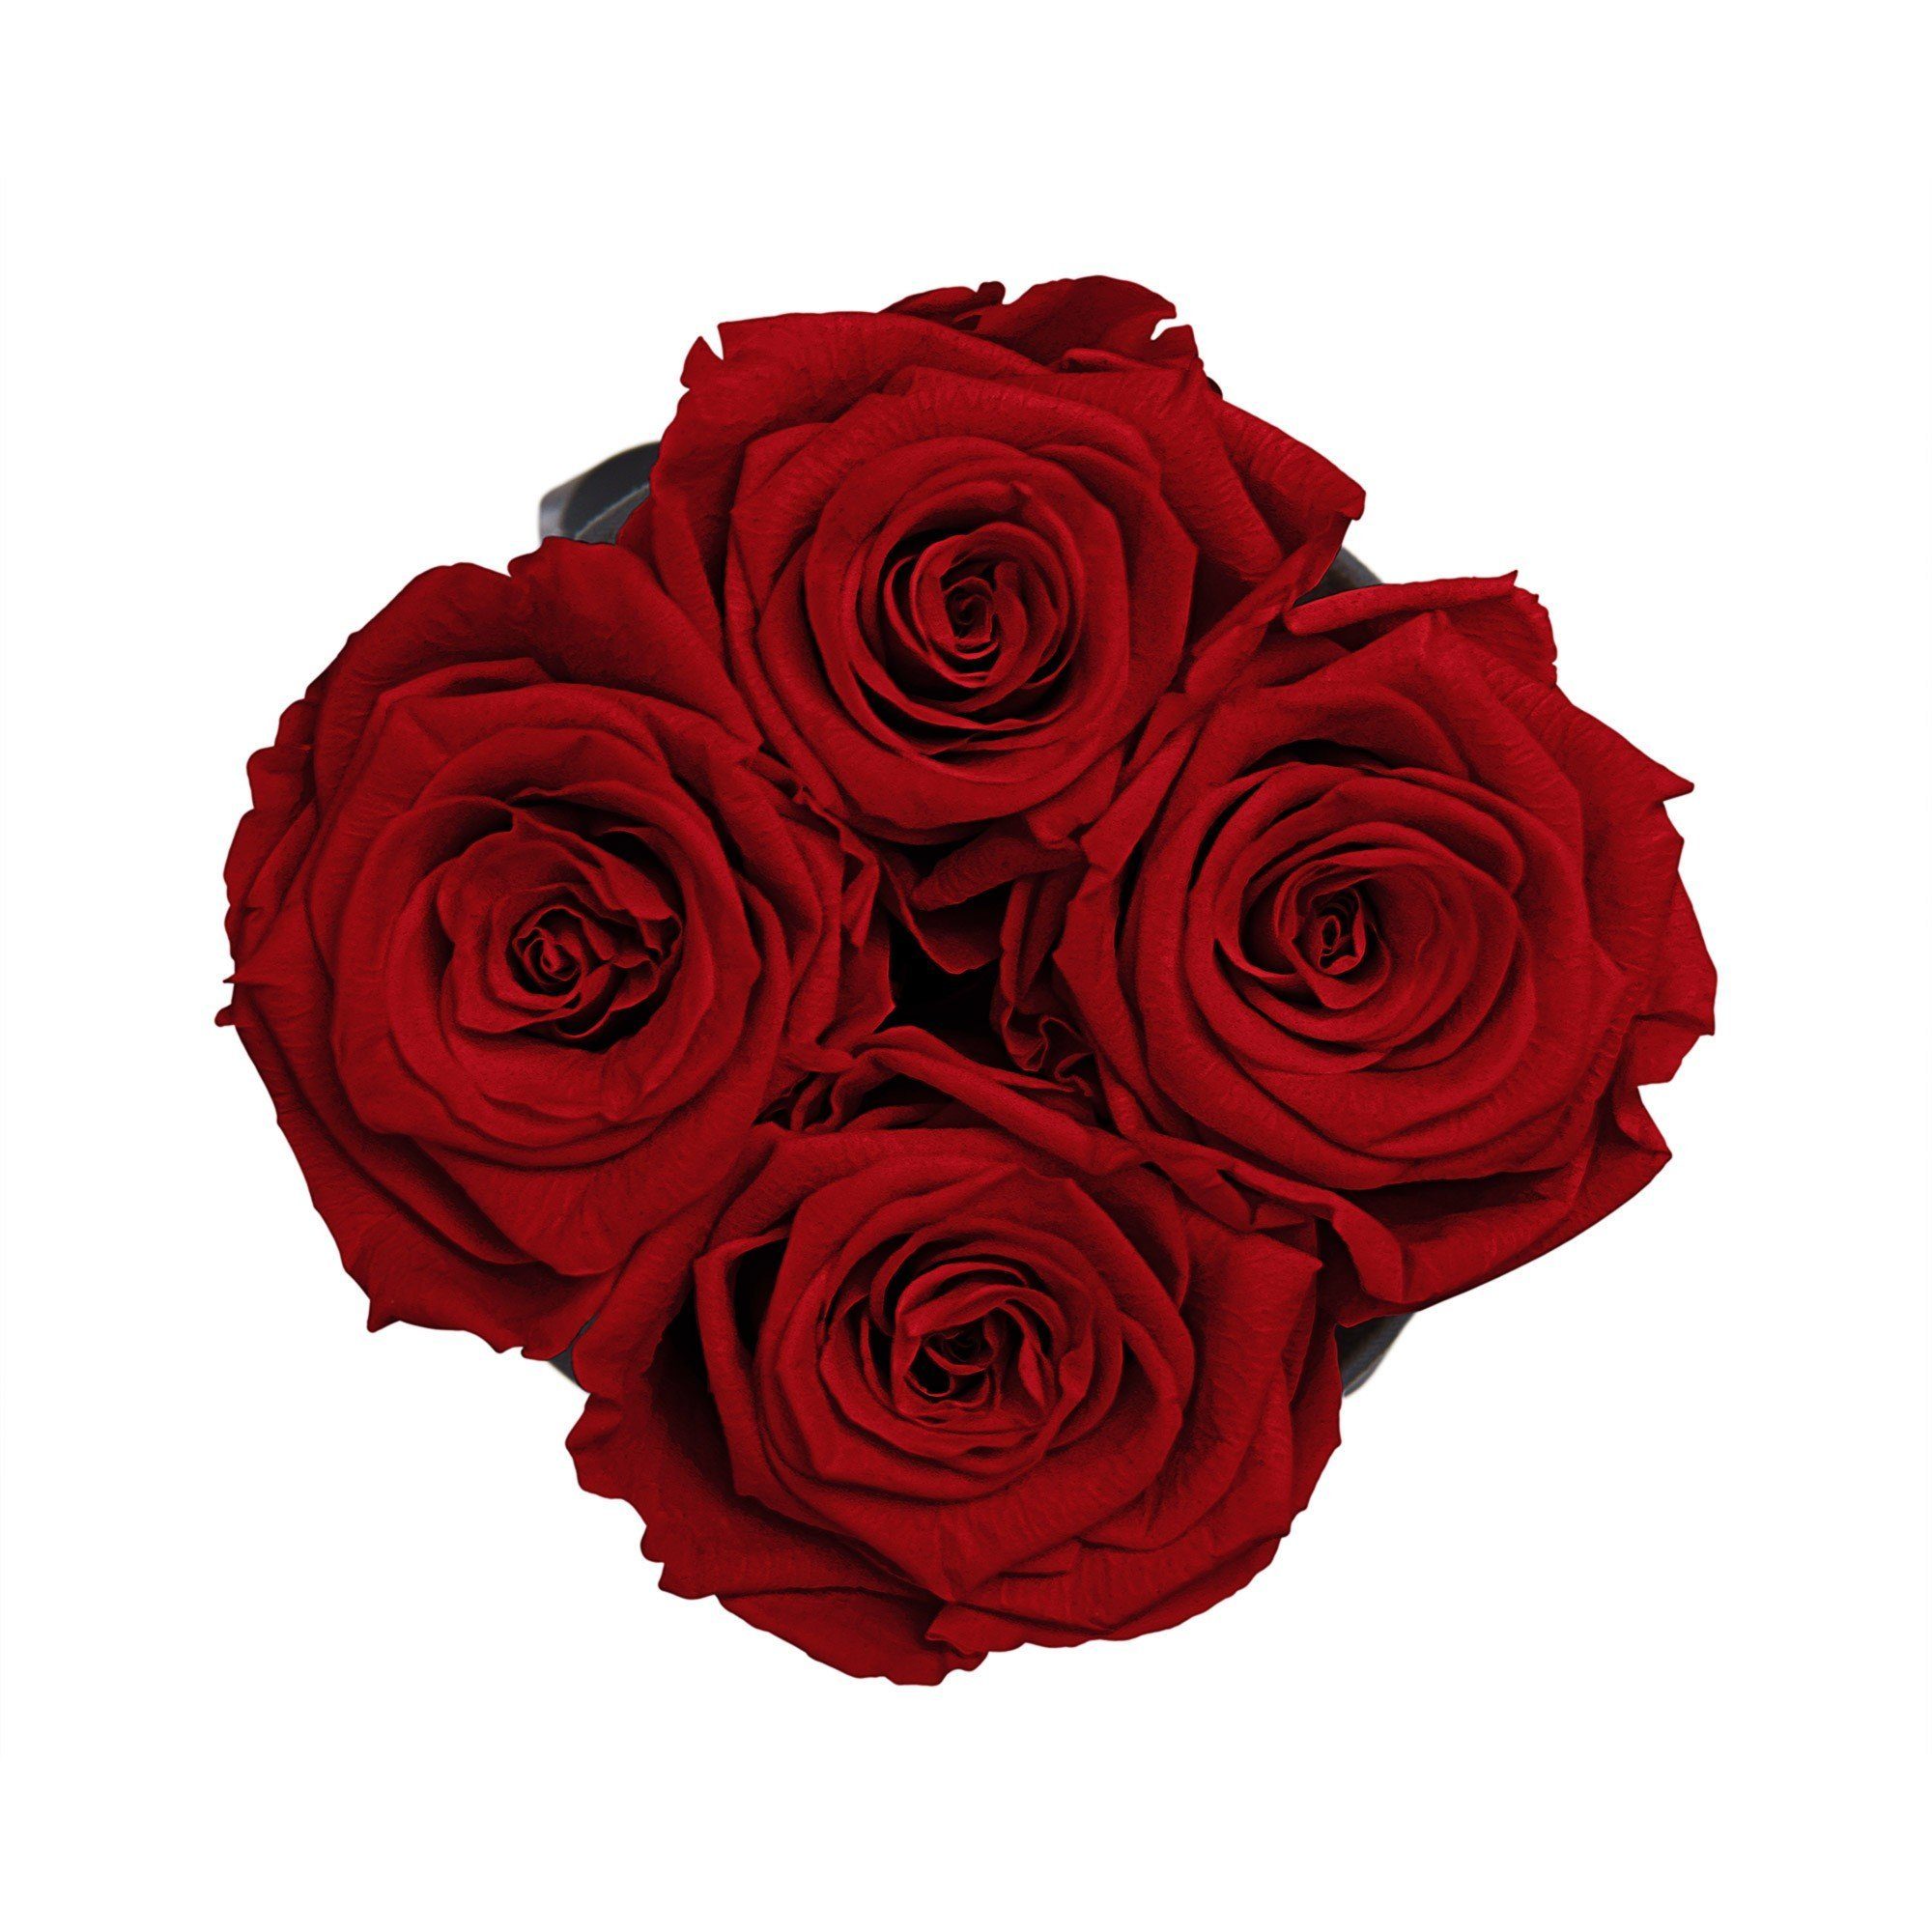 Flowers, Infinity 3 I Raul I Blumen Runde Rosen Infinity weiß haltbar Echte, Kunstblume Jahre cm konservierte Holy 11 mit Heritage Rosenbox Rose, in by Höhe Richter 4-5 Red I duftende